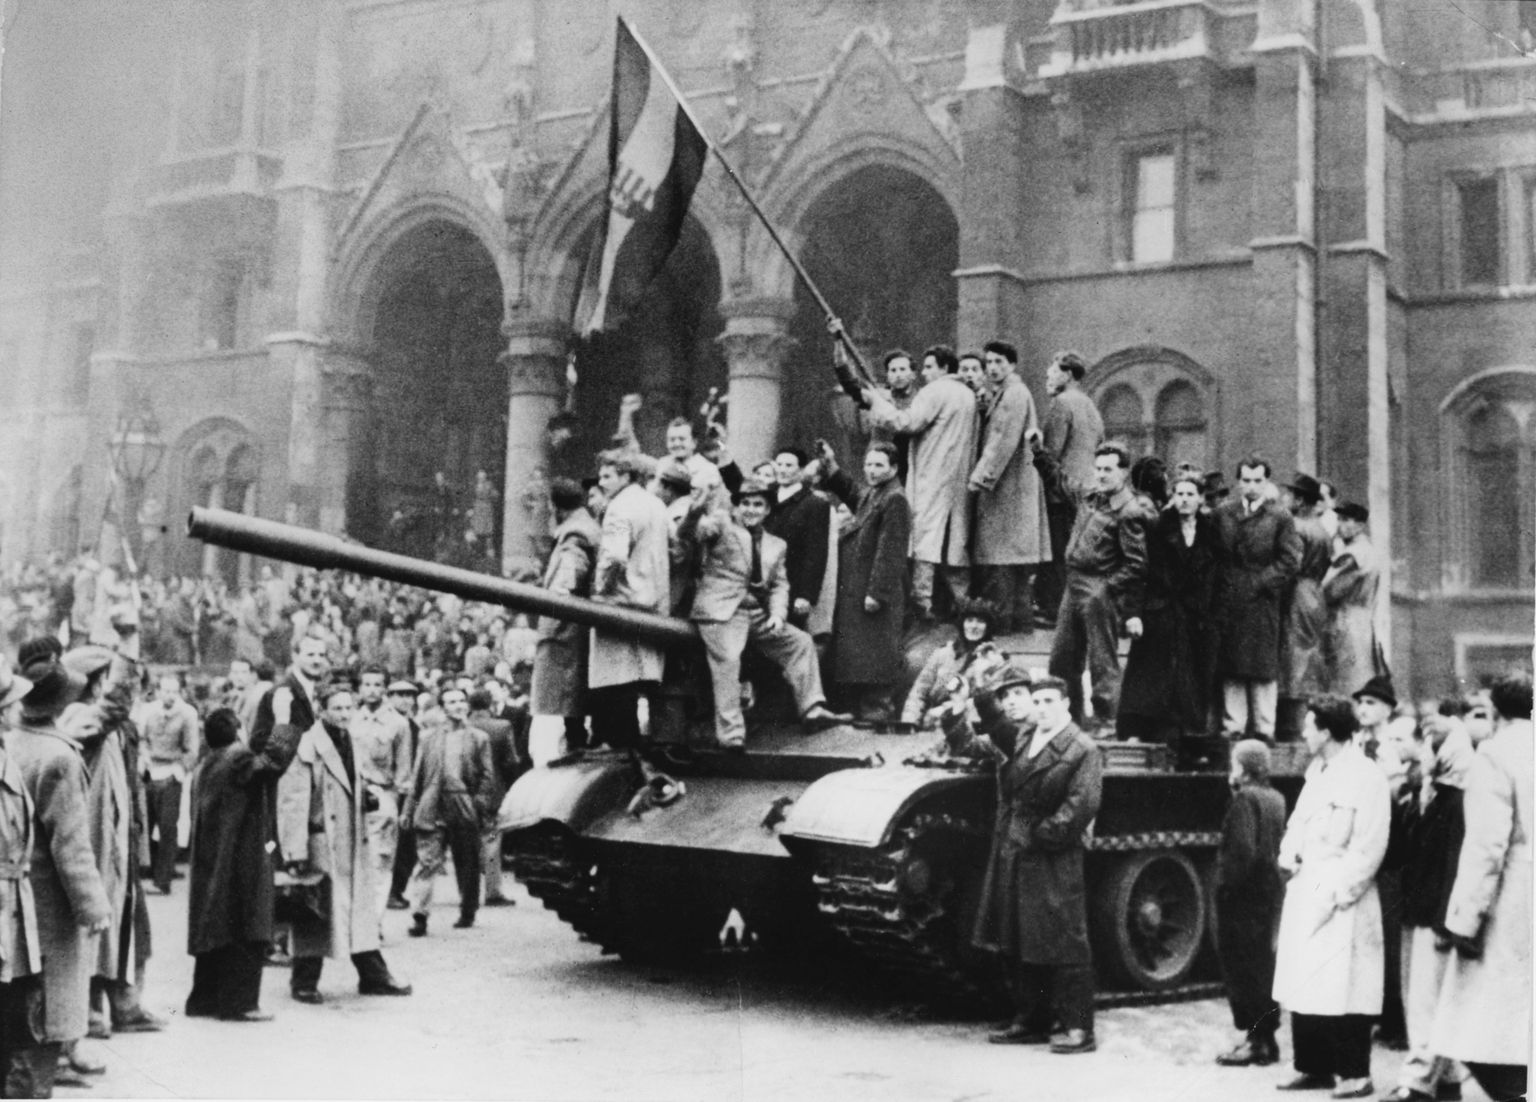 Ungarlased 1956. aasta ülestõusu ajal Nõukogude Liidu vägedelt vallutatud tankiga.